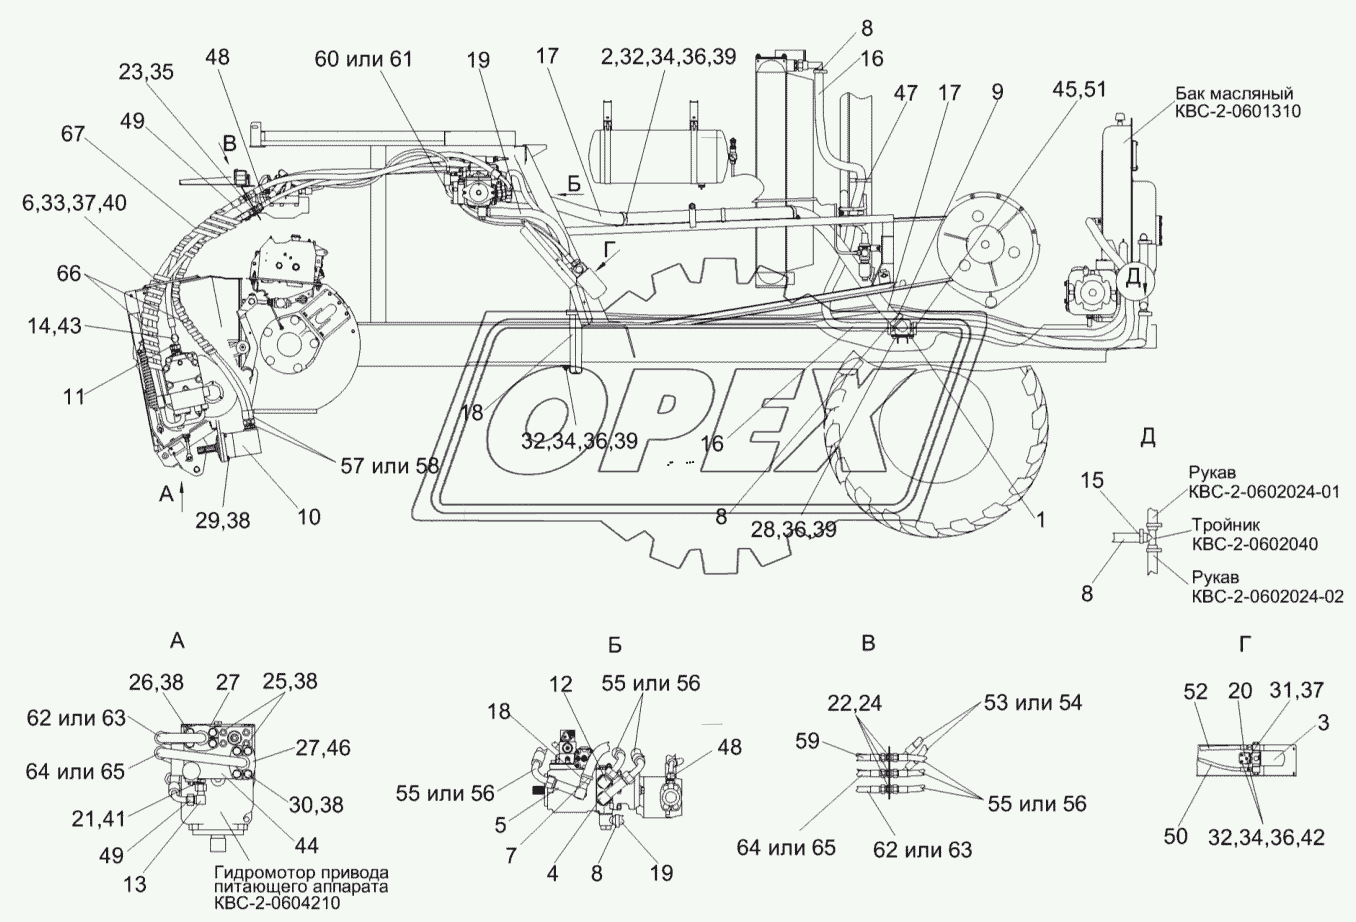 Гидросистема привода питающего аппарата и адаптеров комплекса КВС-5-0604000 (лист 1)